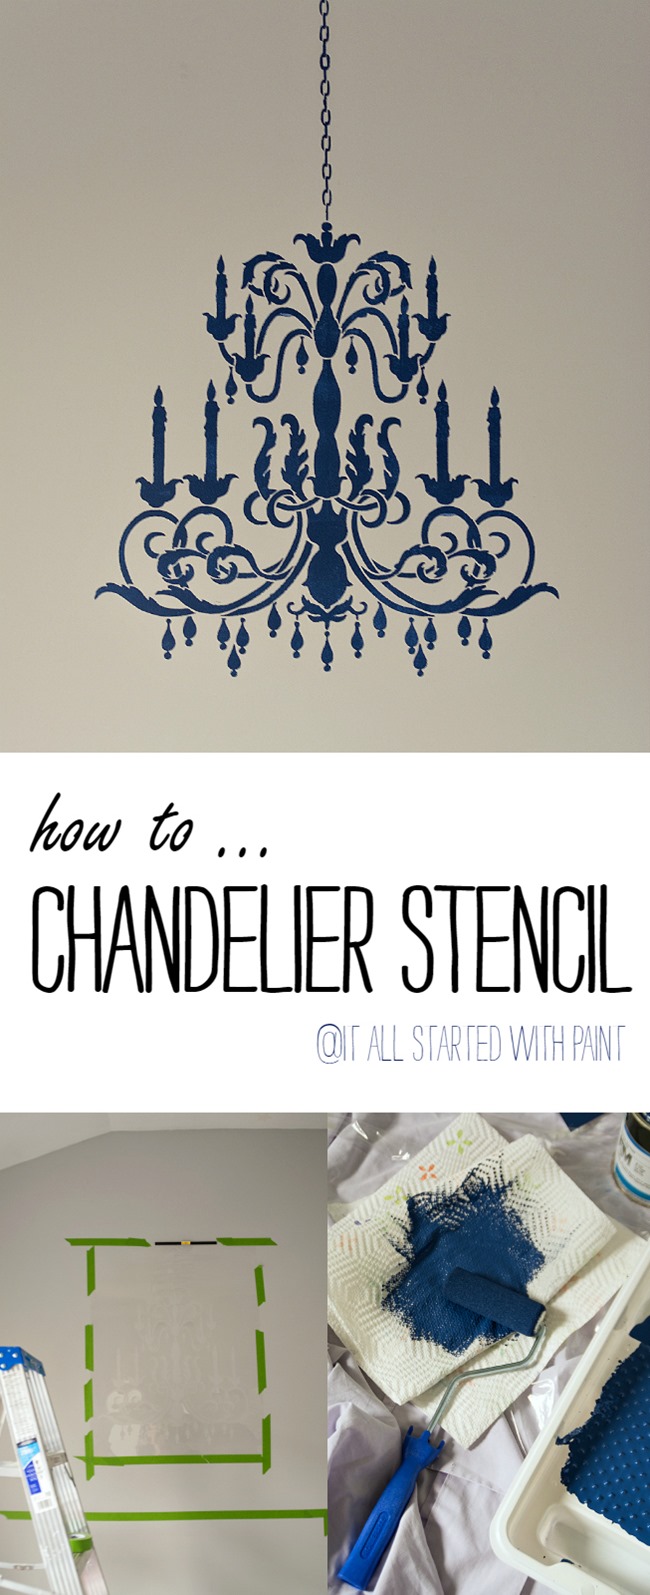 chandelier-stencil-tutorial